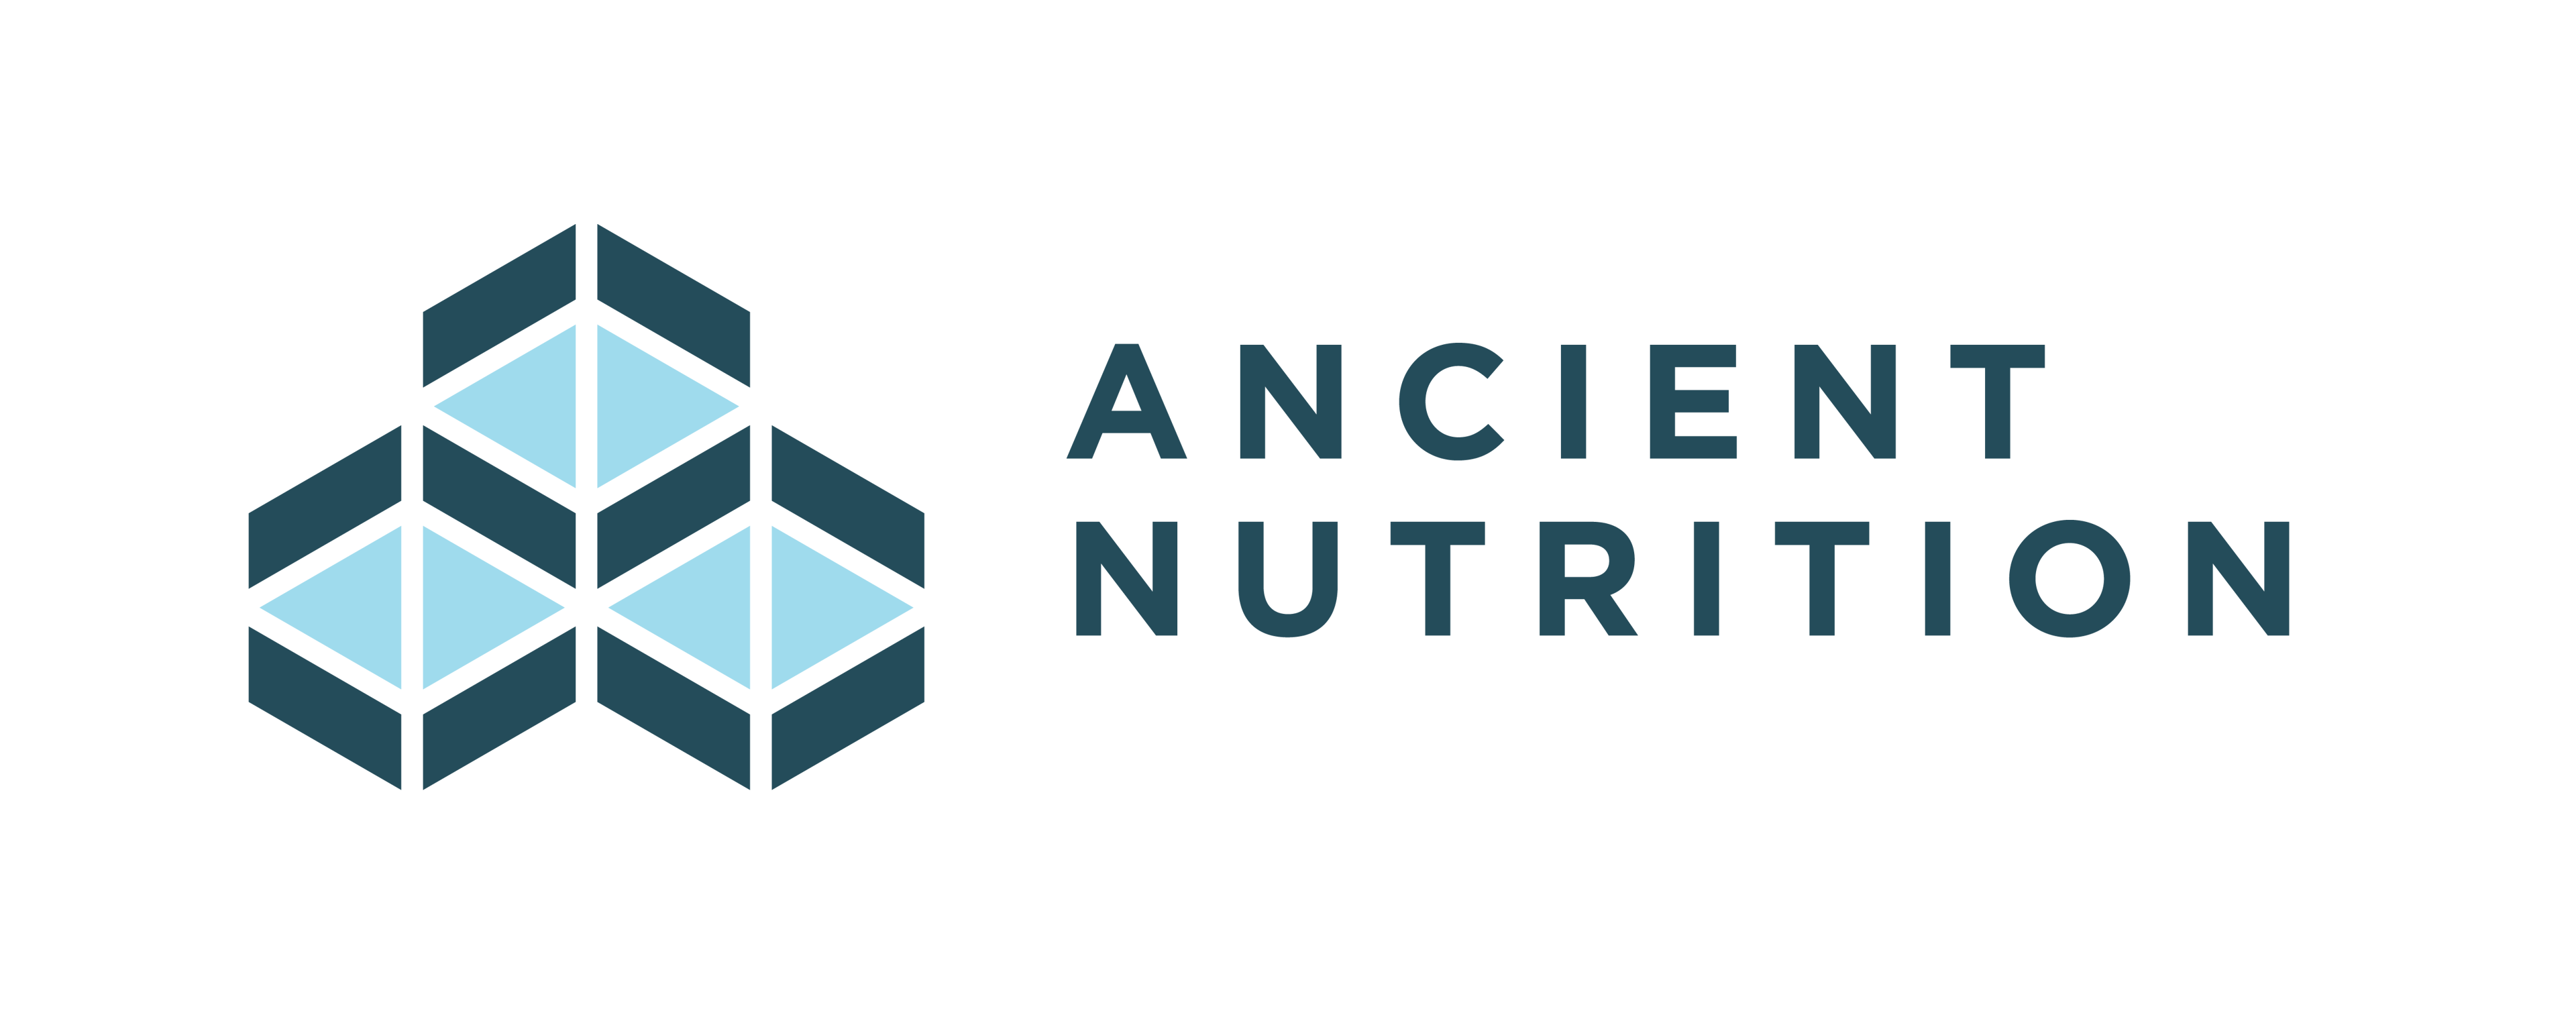 Ancient Nutrition Canada logo